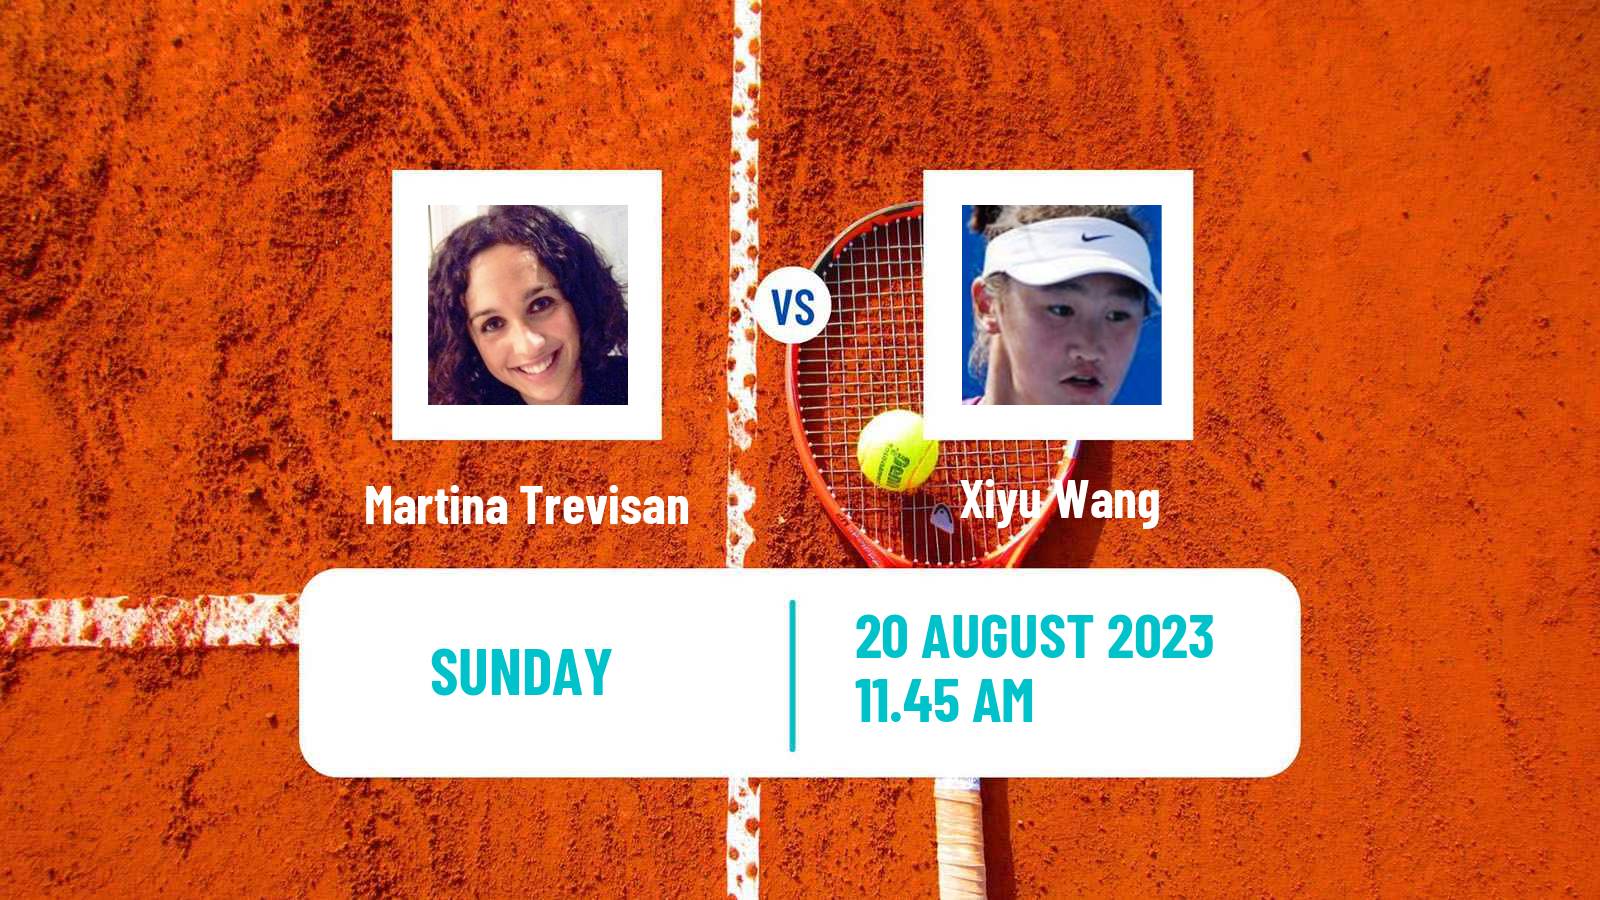 Tennis WTA Cleveland Martina Trevisan - Xiyu Wang